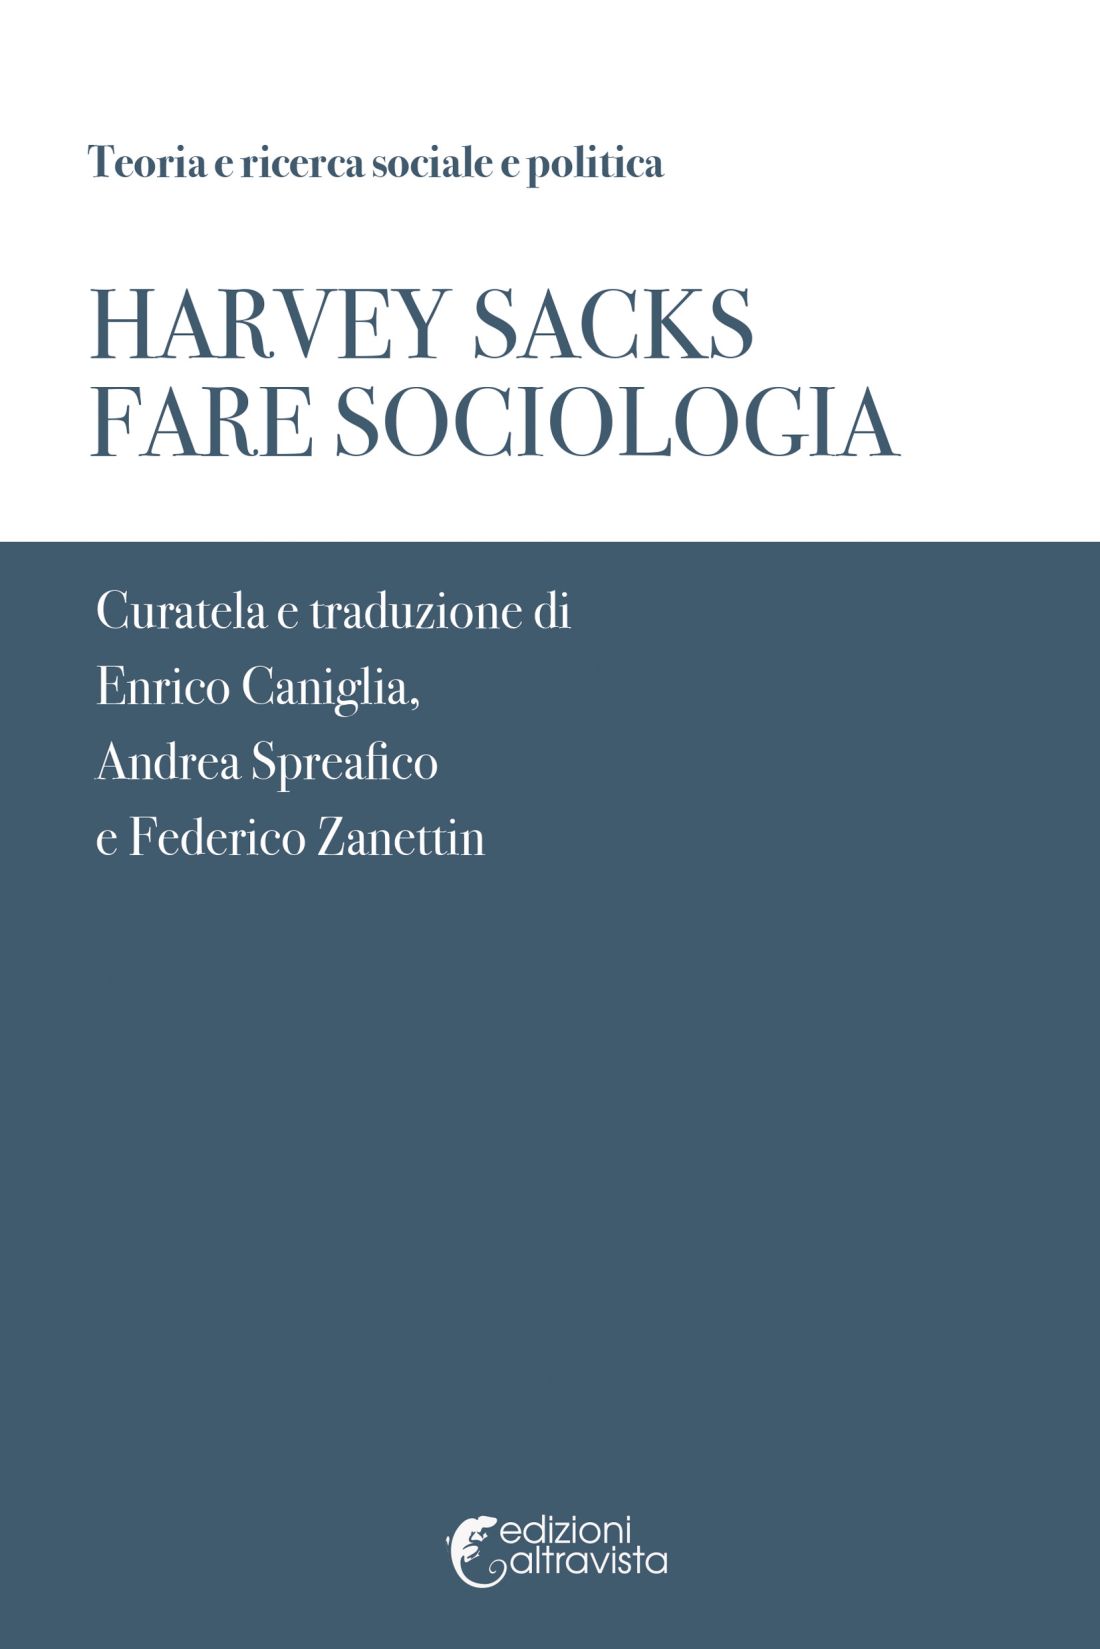 Harvey Sacks - Fare Sociologia